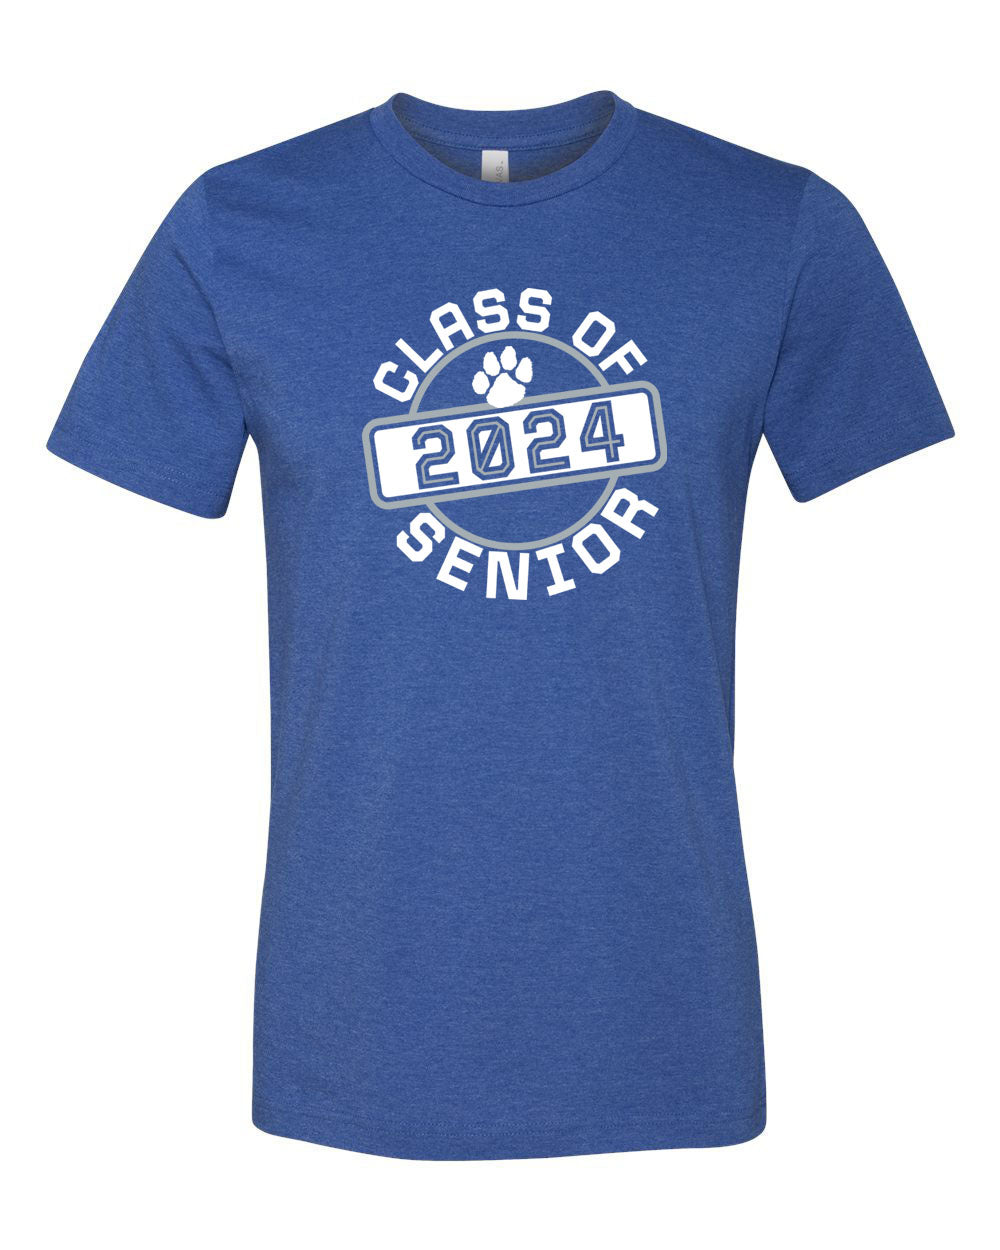 KRHS Senior Class 2024 T-shirt